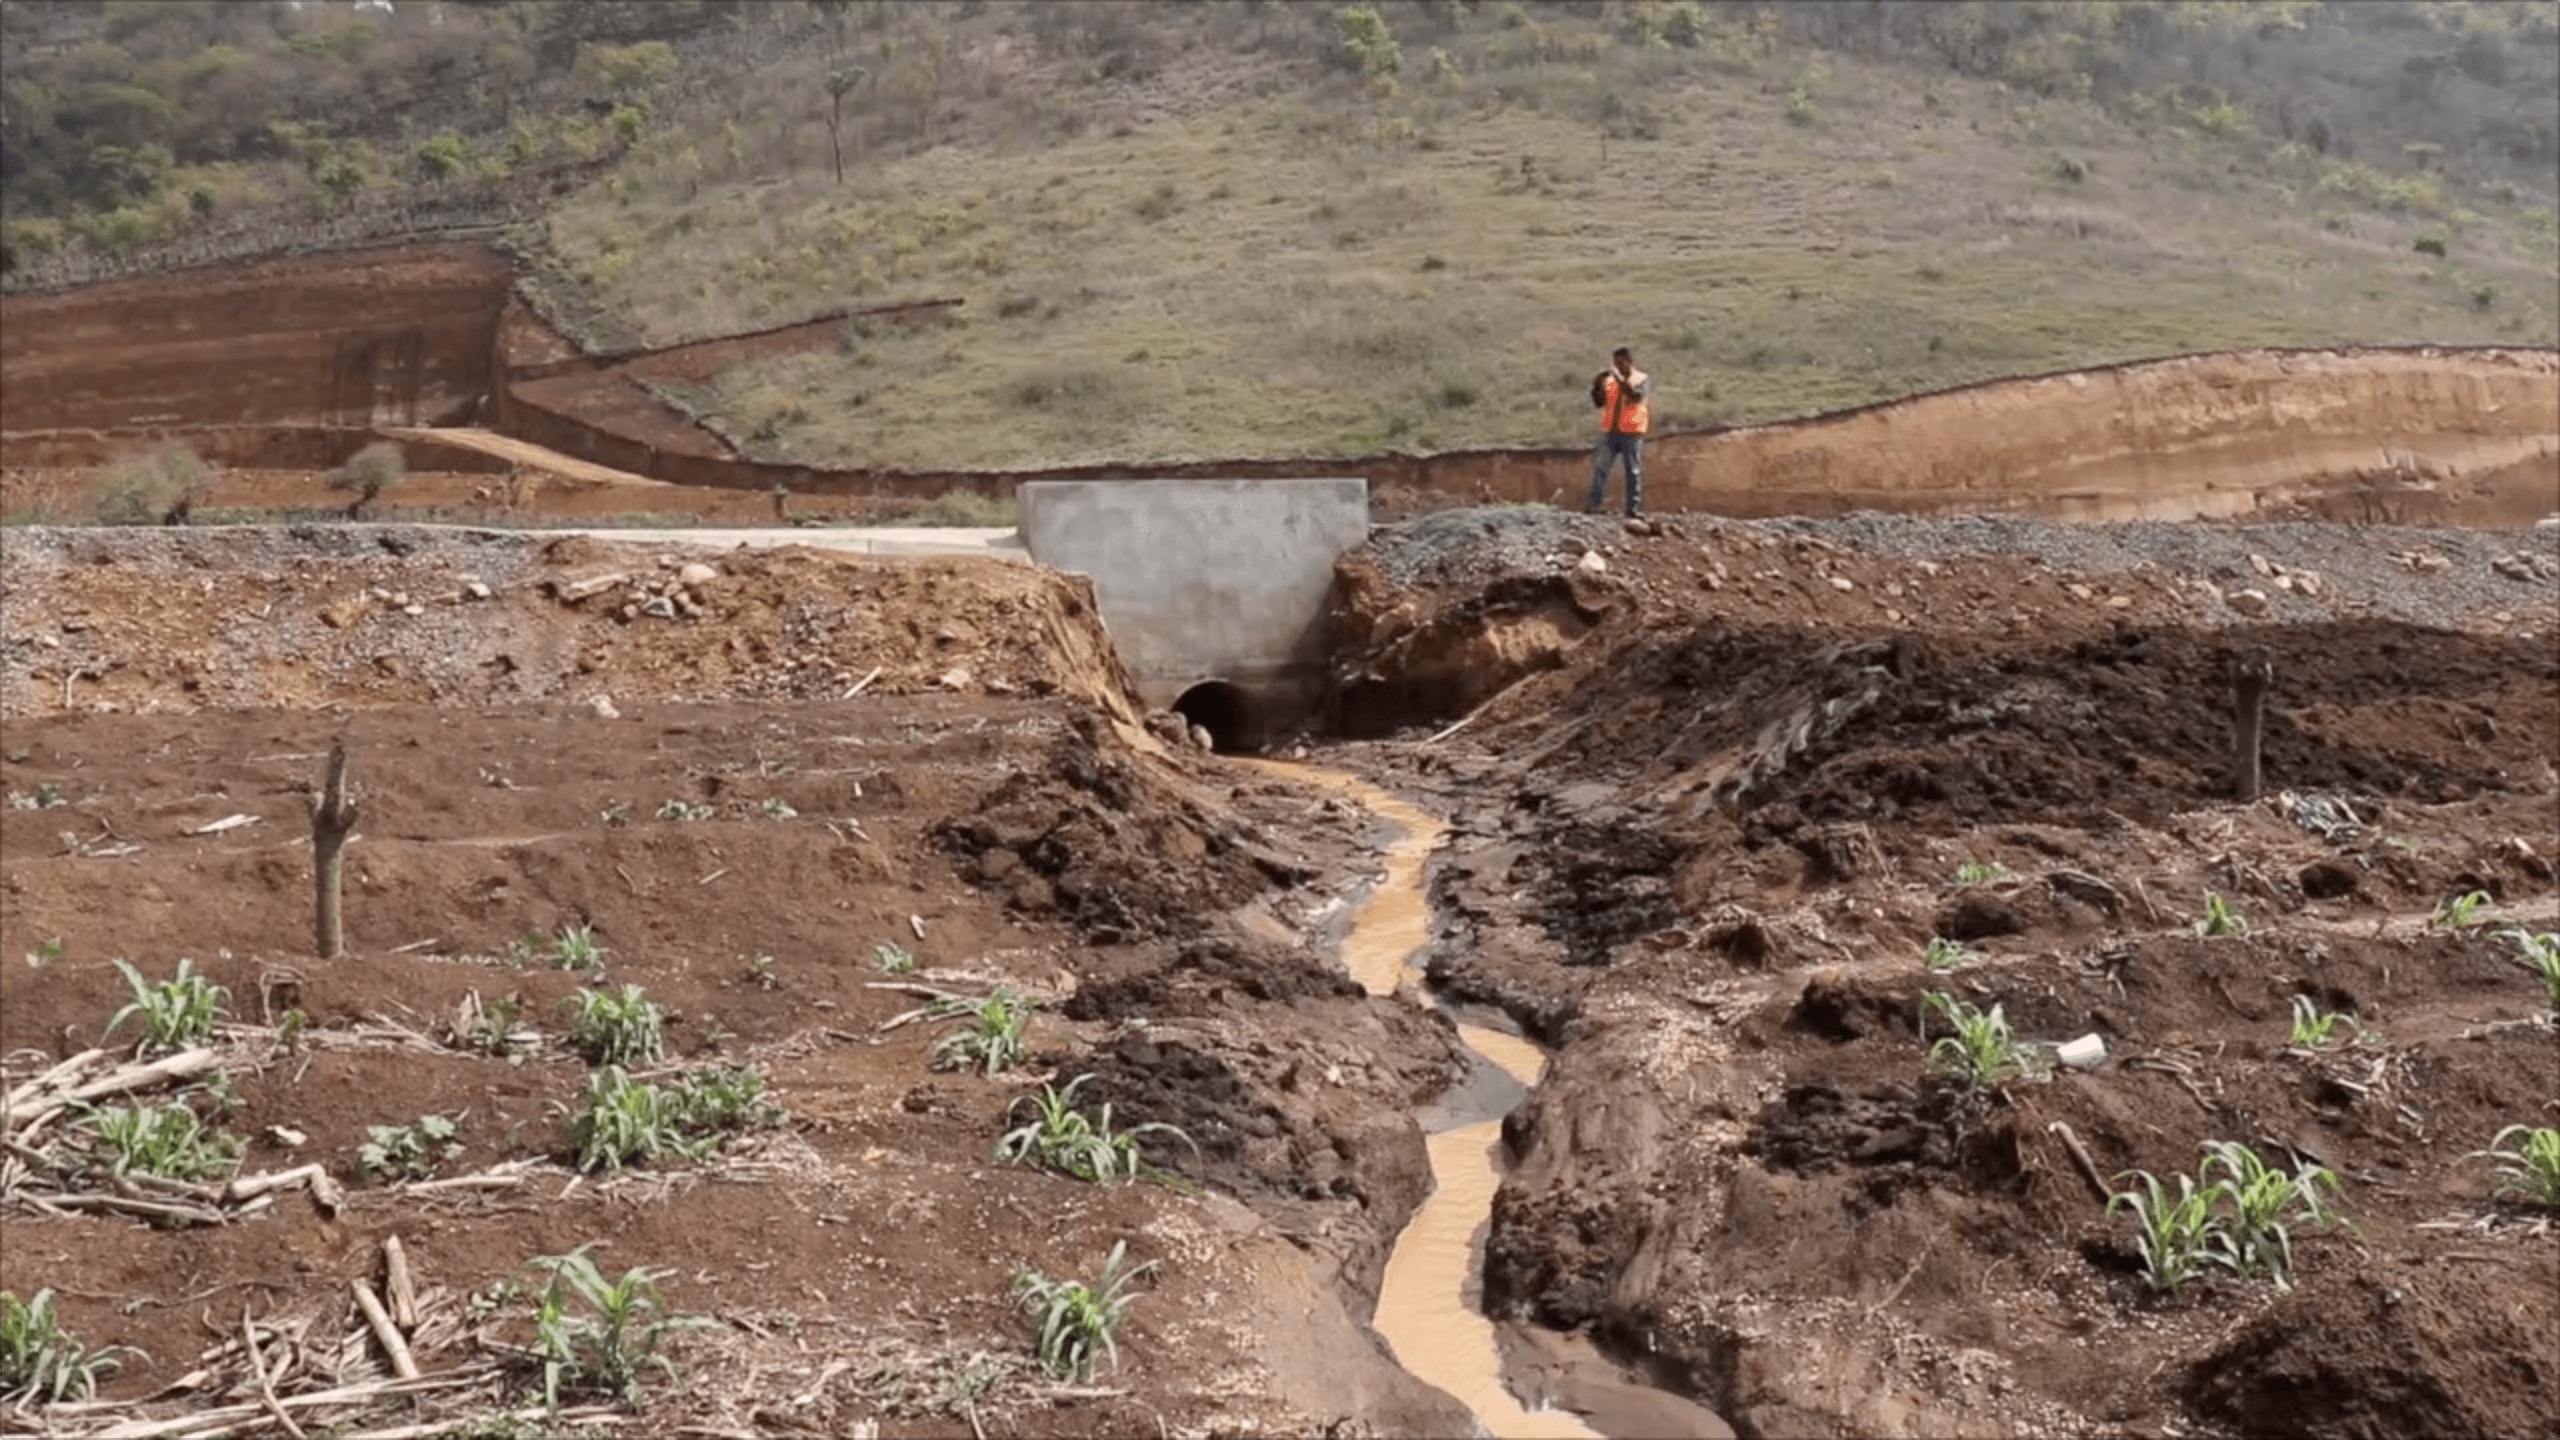 Guatemala adquirió un seguro paramétrico por daños que puedan causar el exceso de lluvias, informó el Ministerio de Finanzas. (Foto Prensa Libre: Hemeroteca)